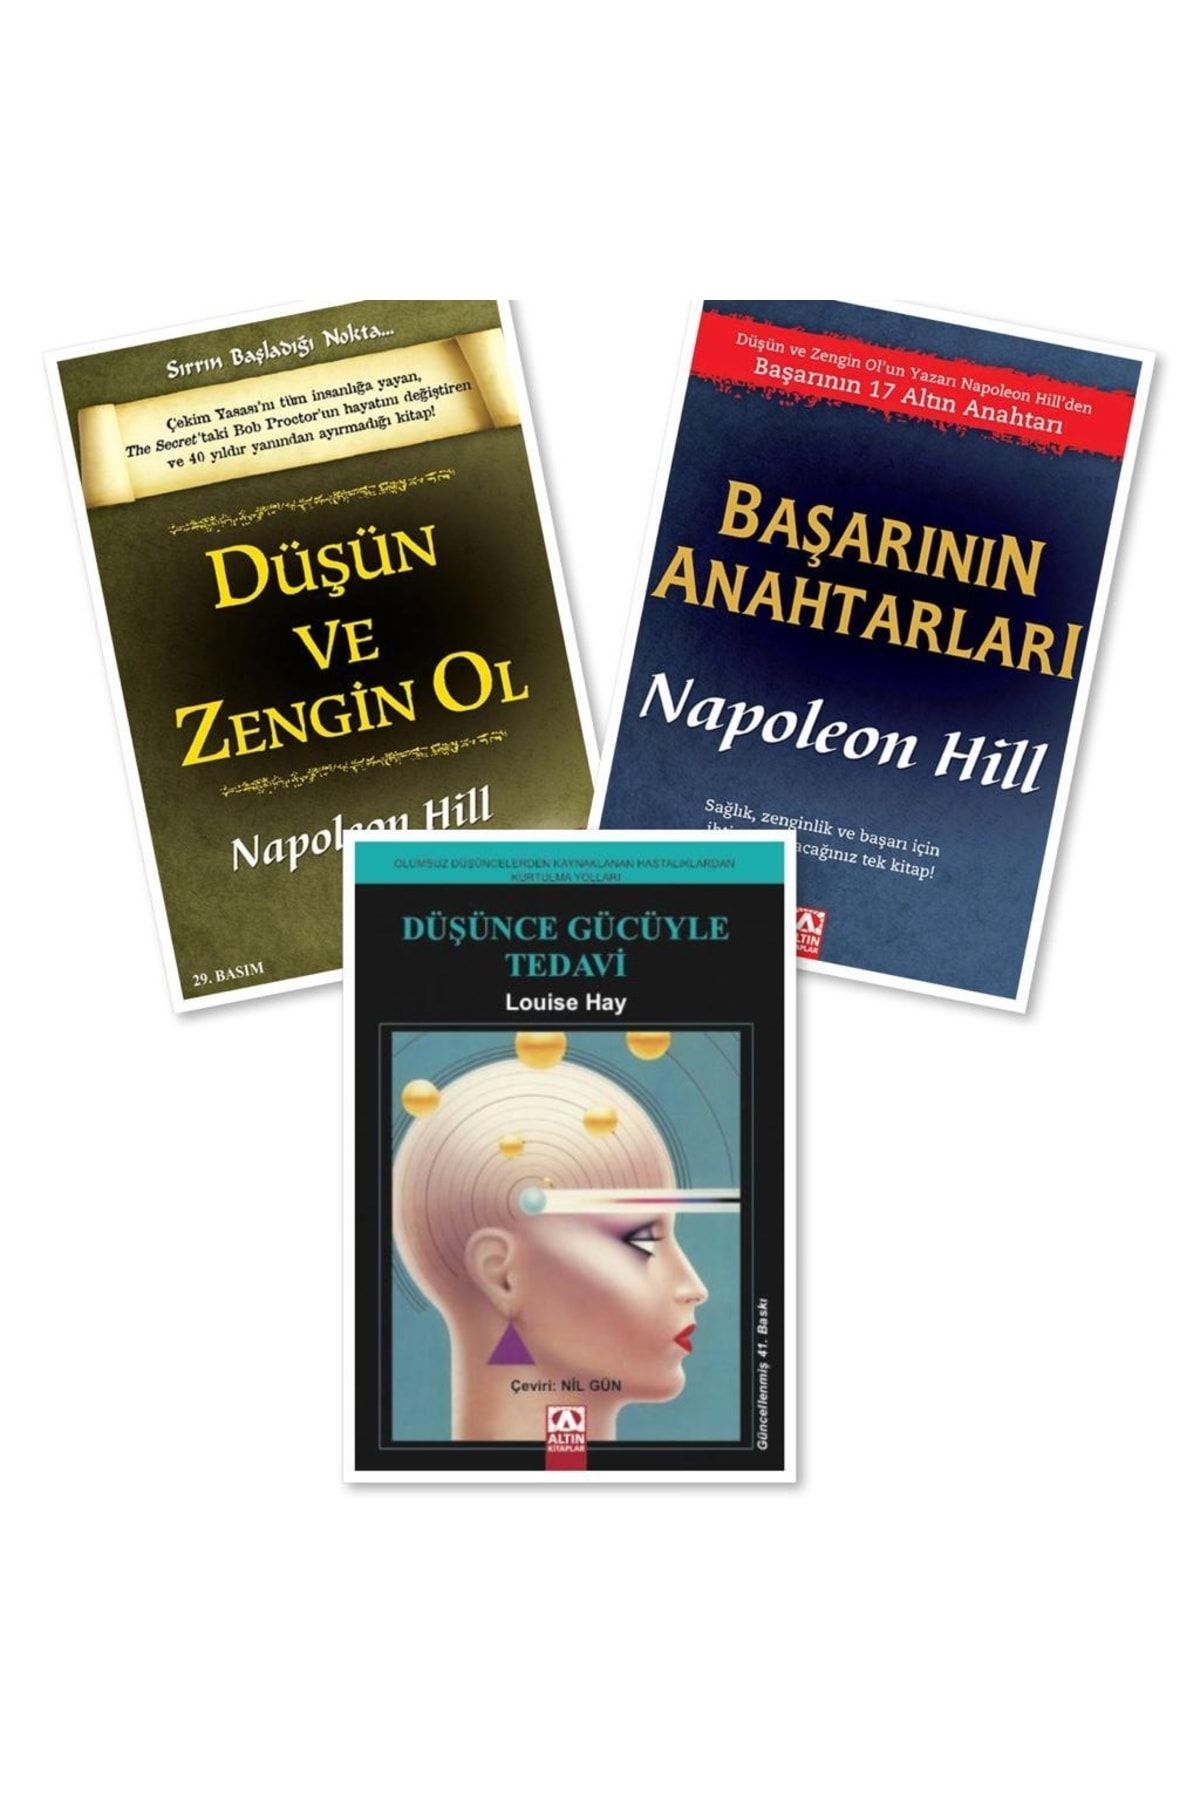 Altın Kitaplar Düşün Ve Zengin Ol - Başarının Anahtarları - Düşünce Gücüyle Tedavi, Napoleon Hill - Louise Hay